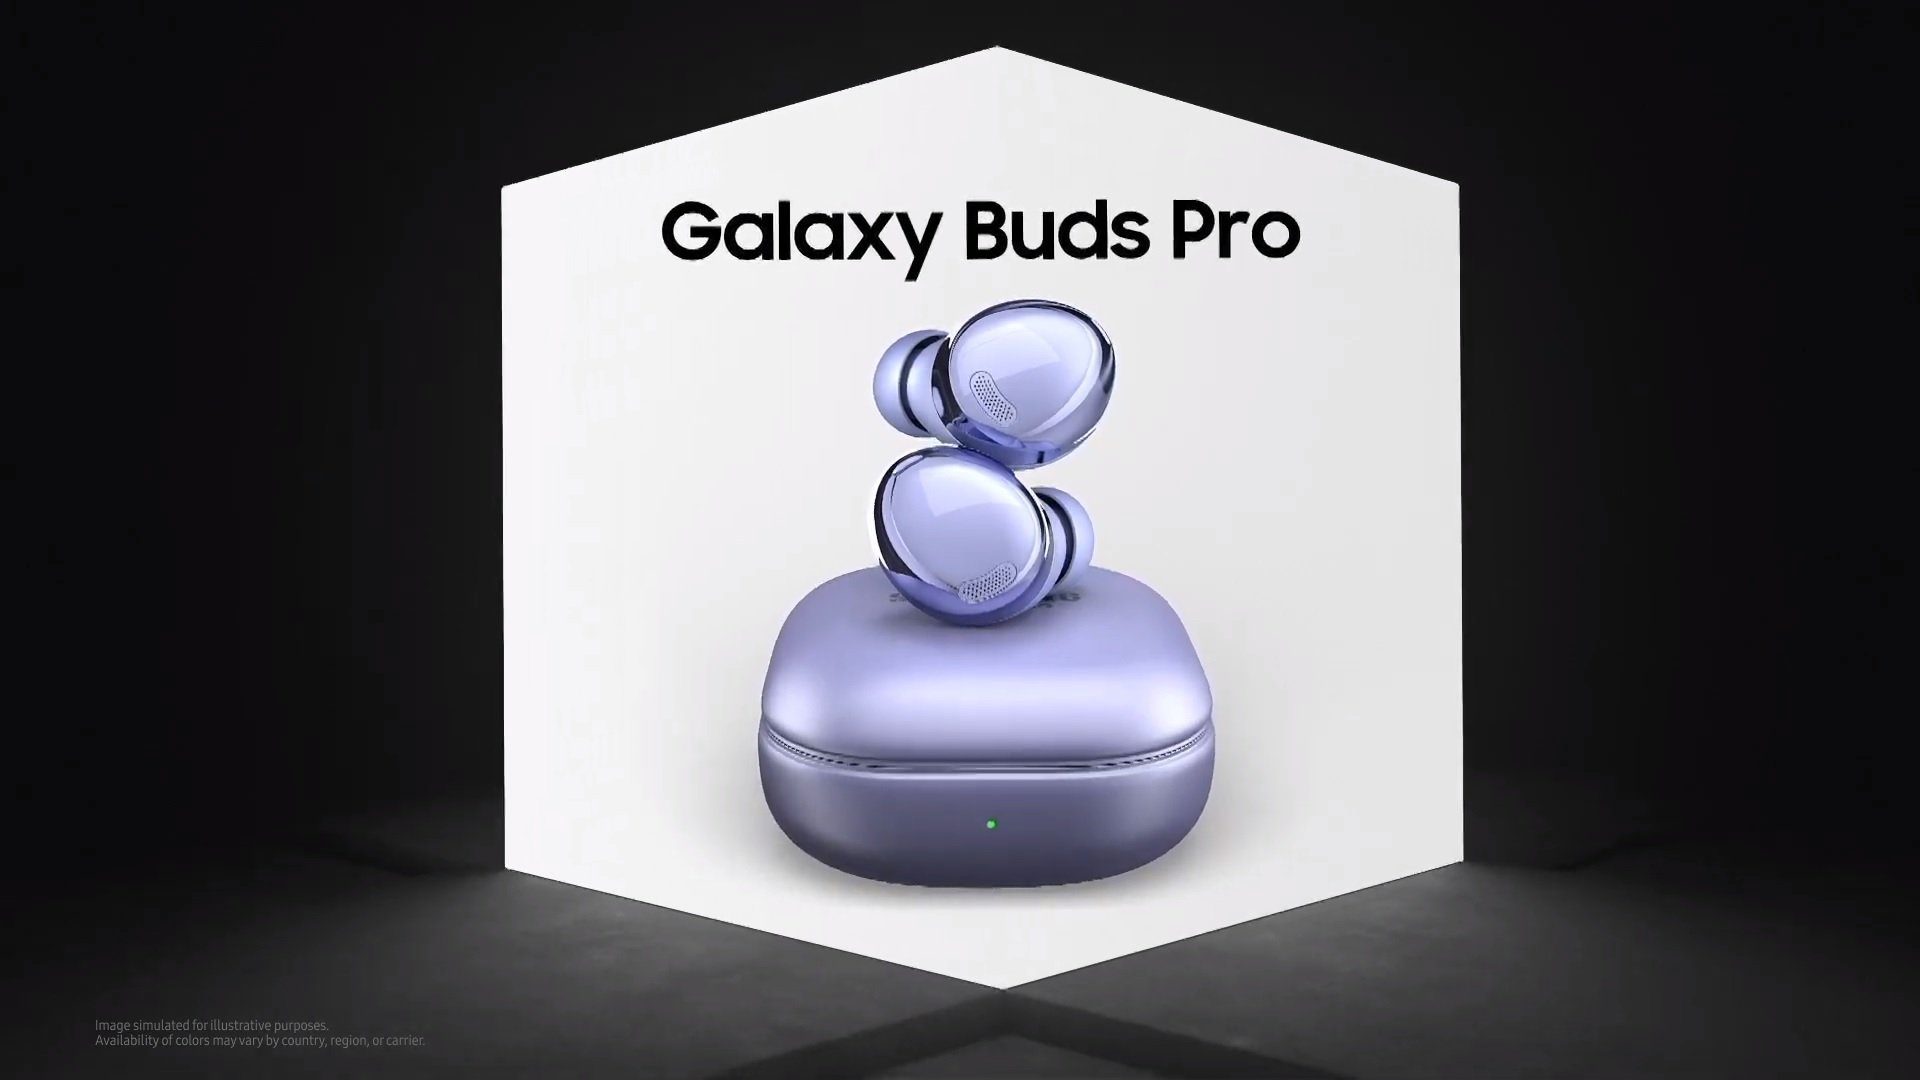 Hier Galaxy Buds Pro - die neuesten kabellosen Flaggschiff-Kopfhörer von Samsung 256